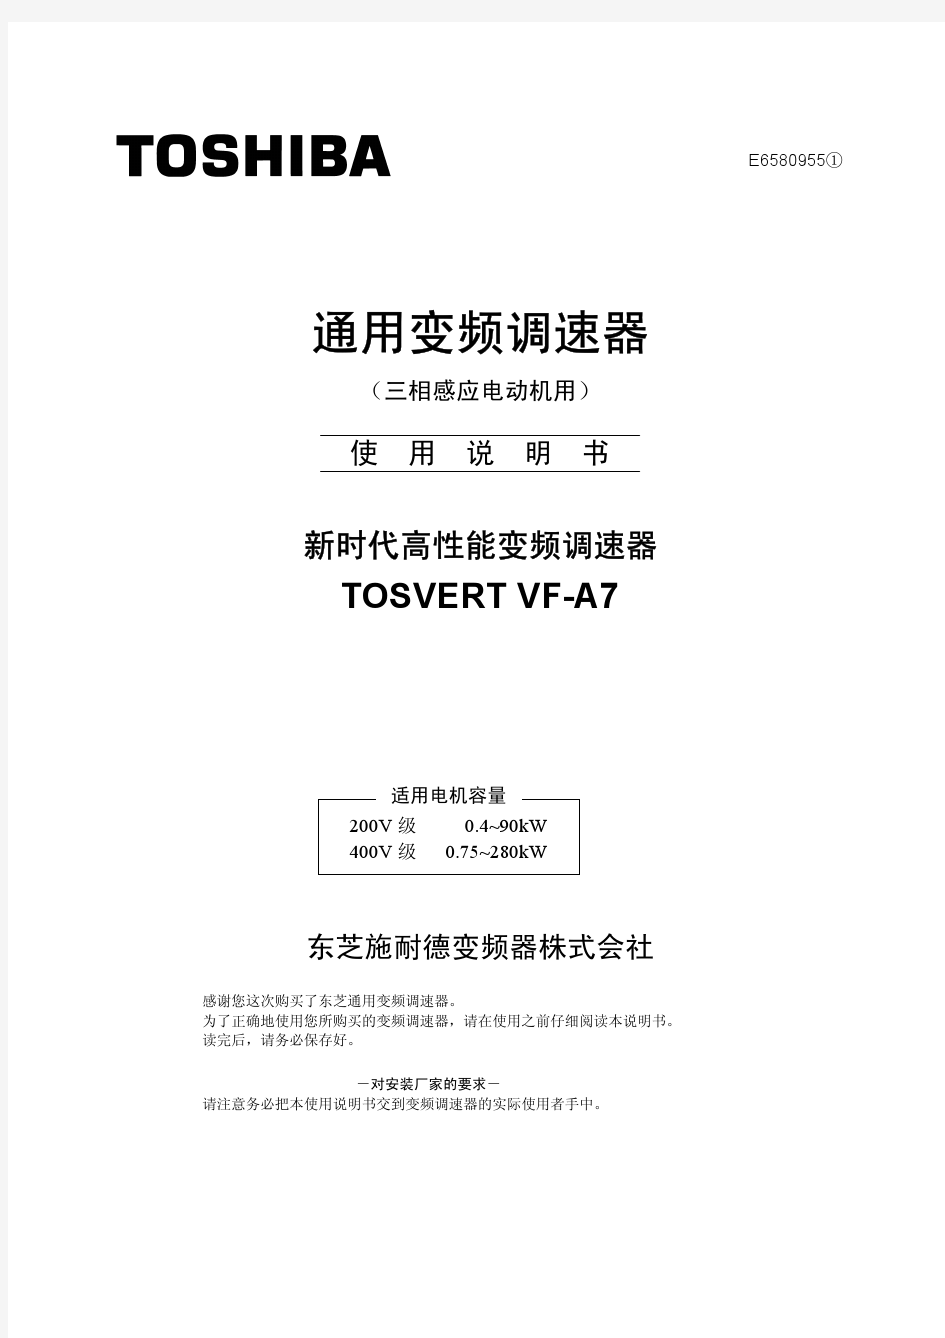 TOSVERT VF-A7 系列东芝变频器中文操作手册